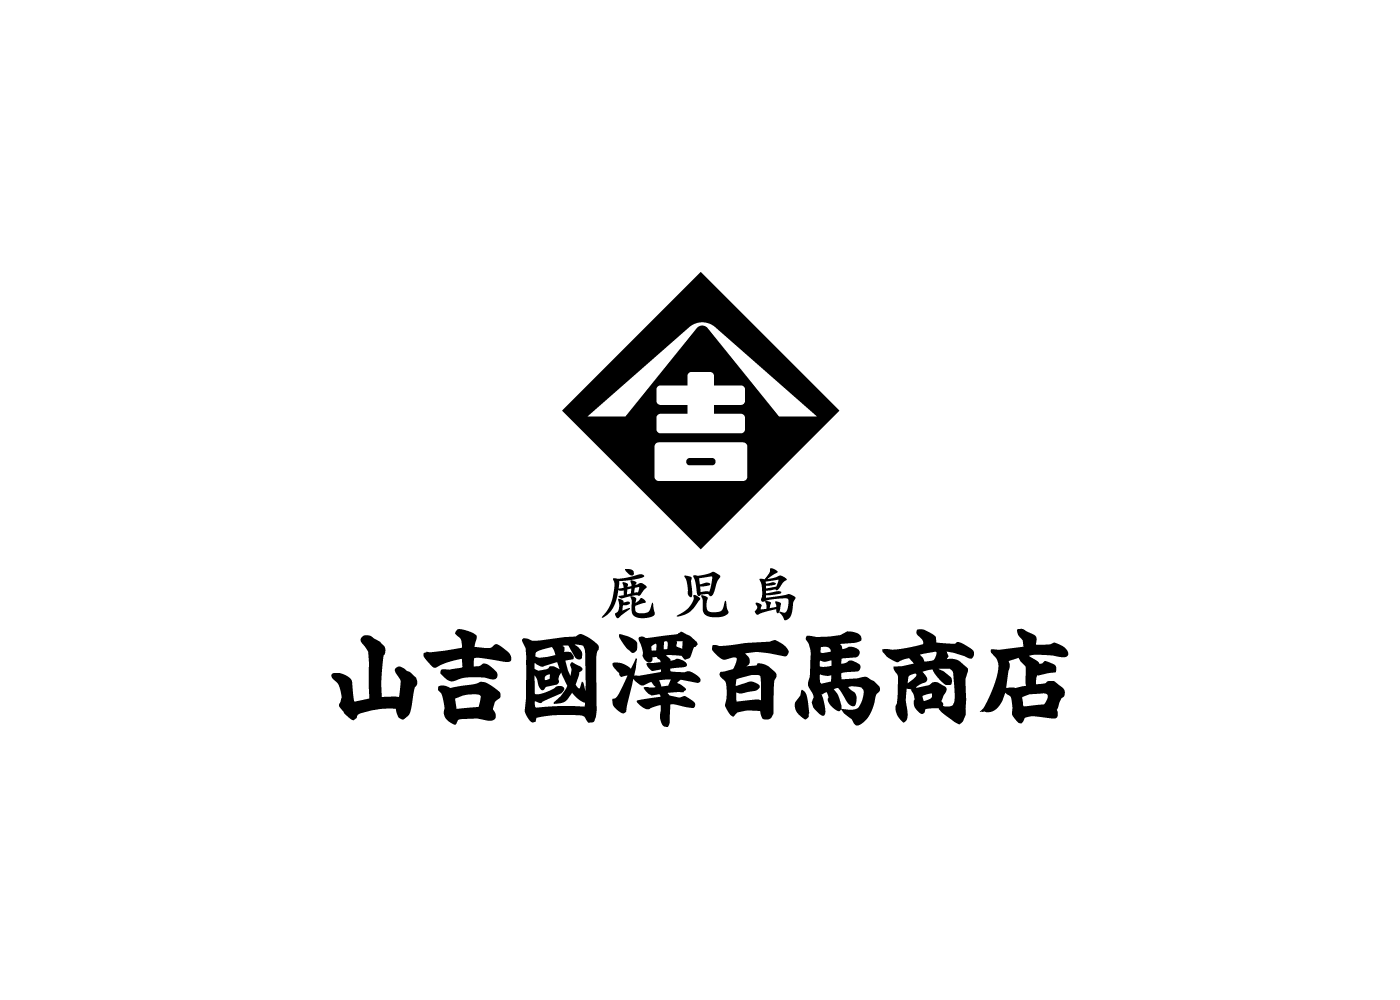 山吉國澤百馬商店オンラインショップがリニューアルオープンしました